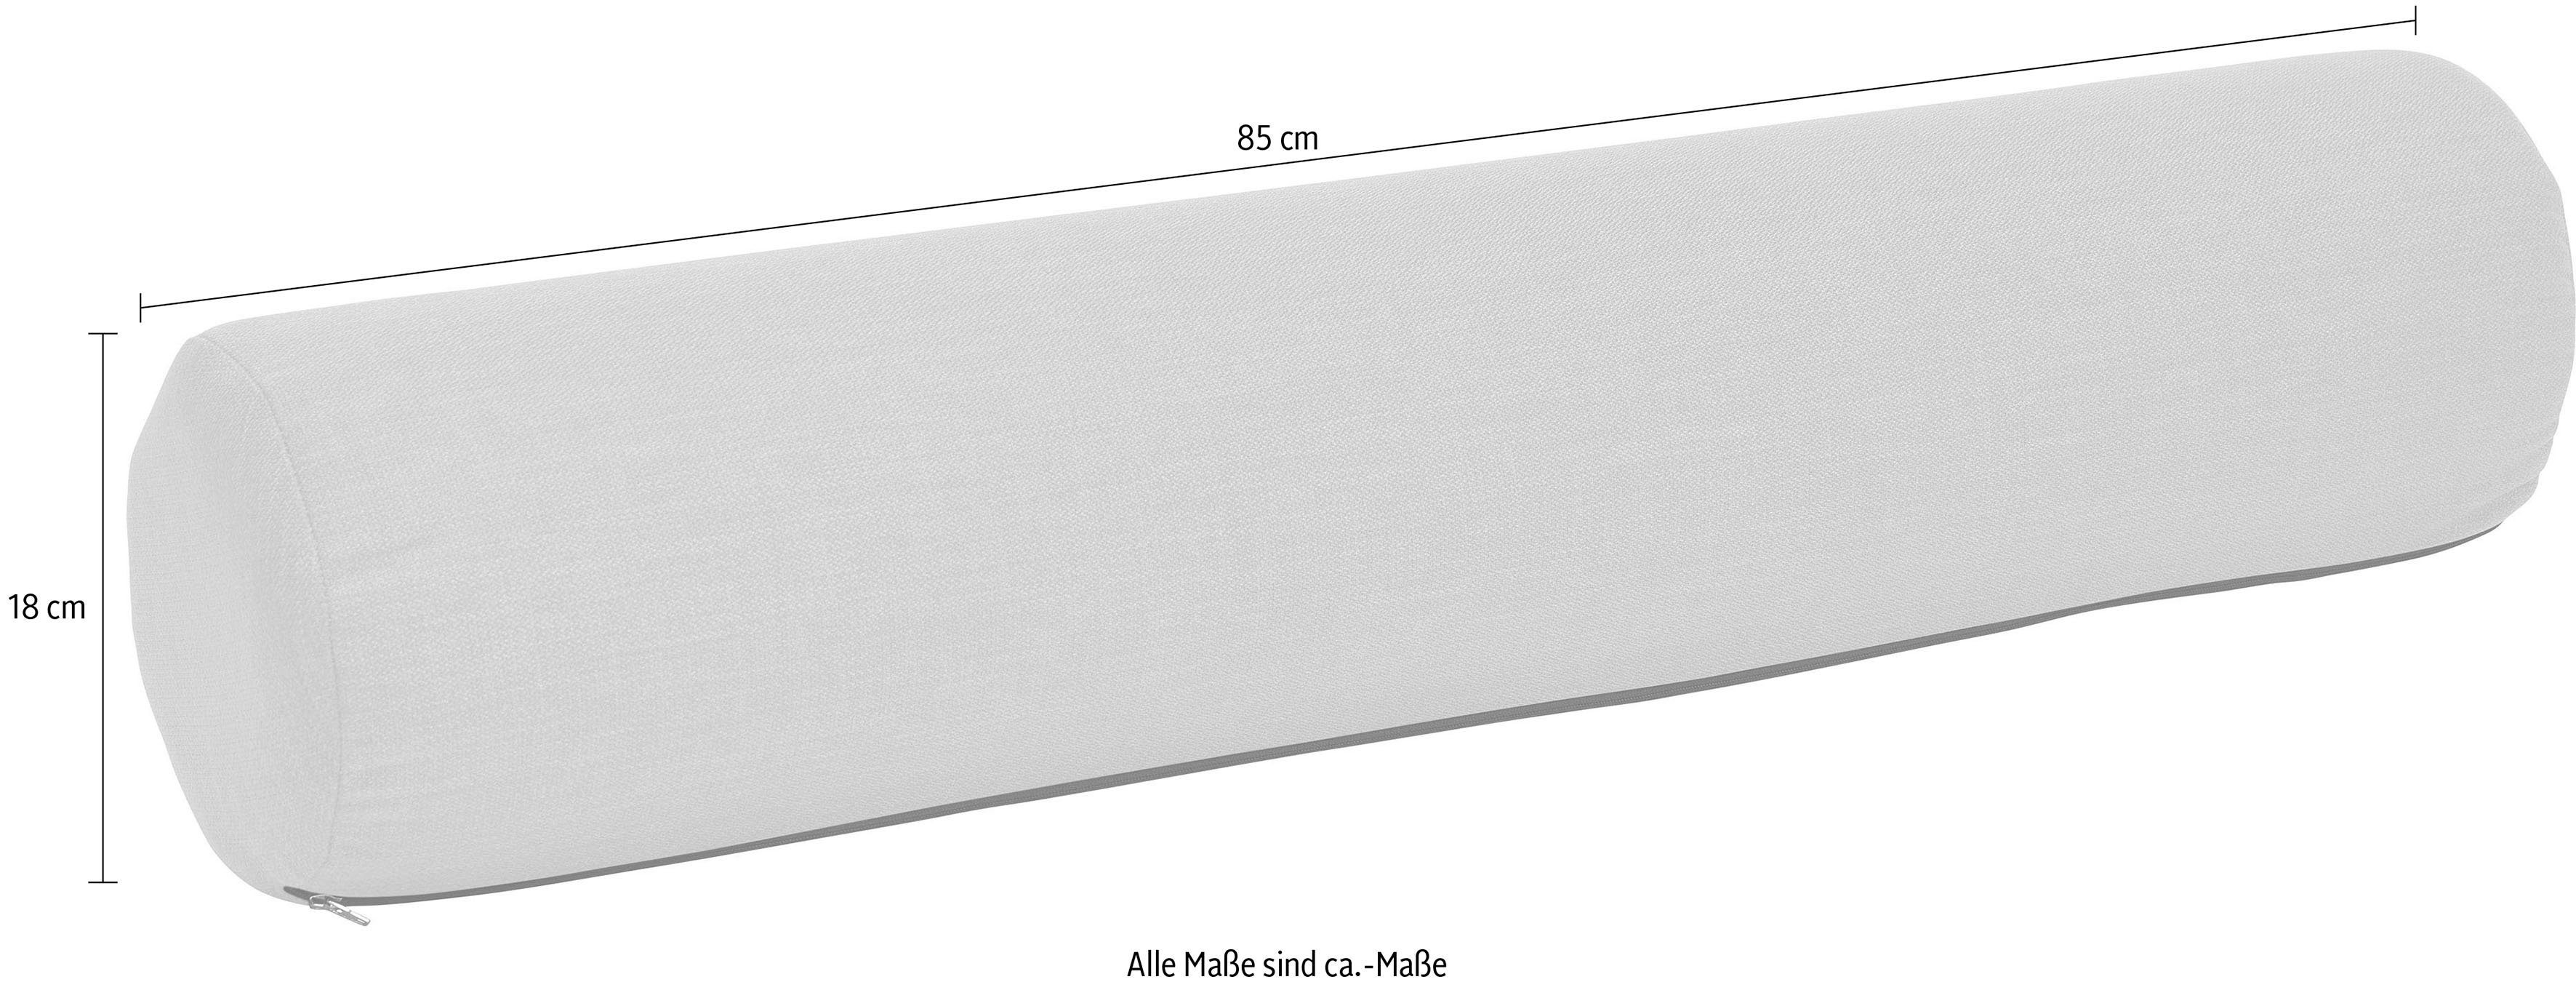 Müller SMALL LIVING KVADRAT Fiord 2 in Kopfstütze RG-25-Nackenrolle, Stoff hochwertigem bezogen Designstoff